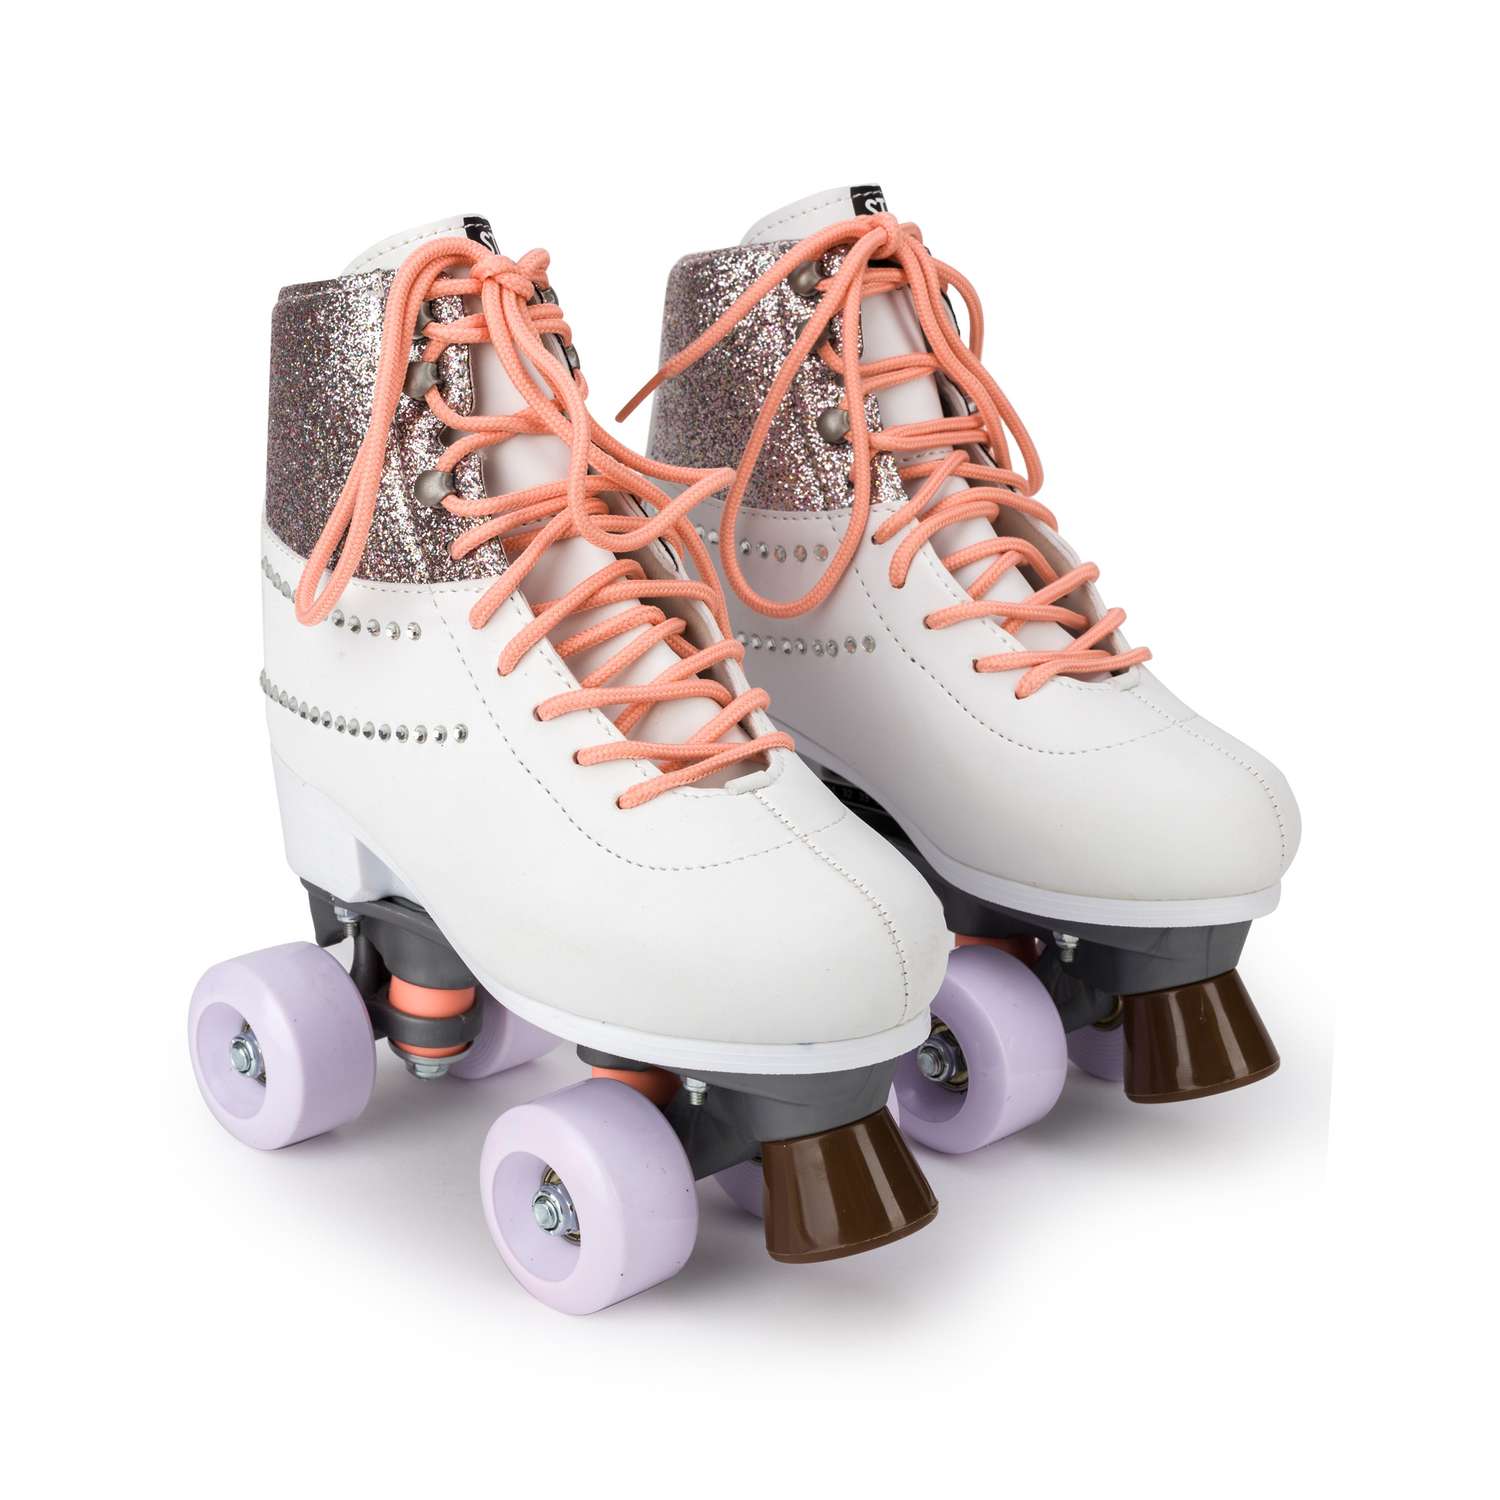 Роликовые коньки SXRide Roller skate YXSKT04CAMO цвет серебристые размер 31-34 - фото 1